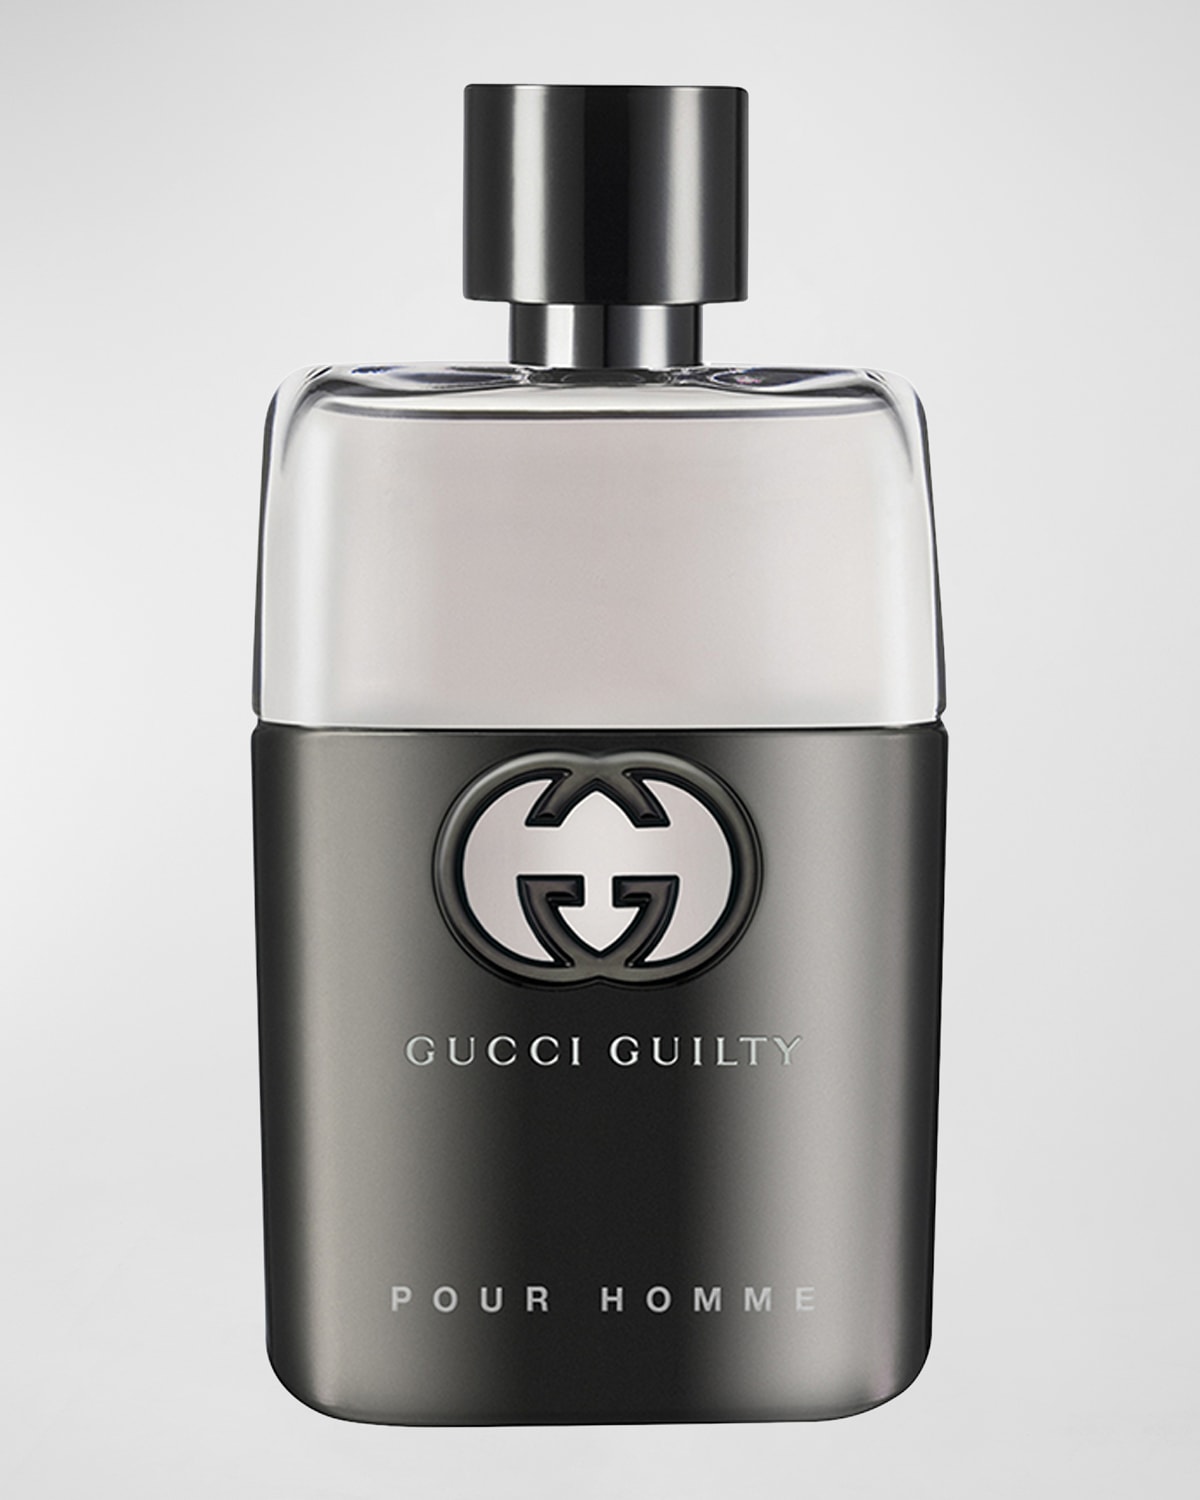 Gucci Guilty Pour Homme Eau de Toilette, 1.7 oz./ 50 mL